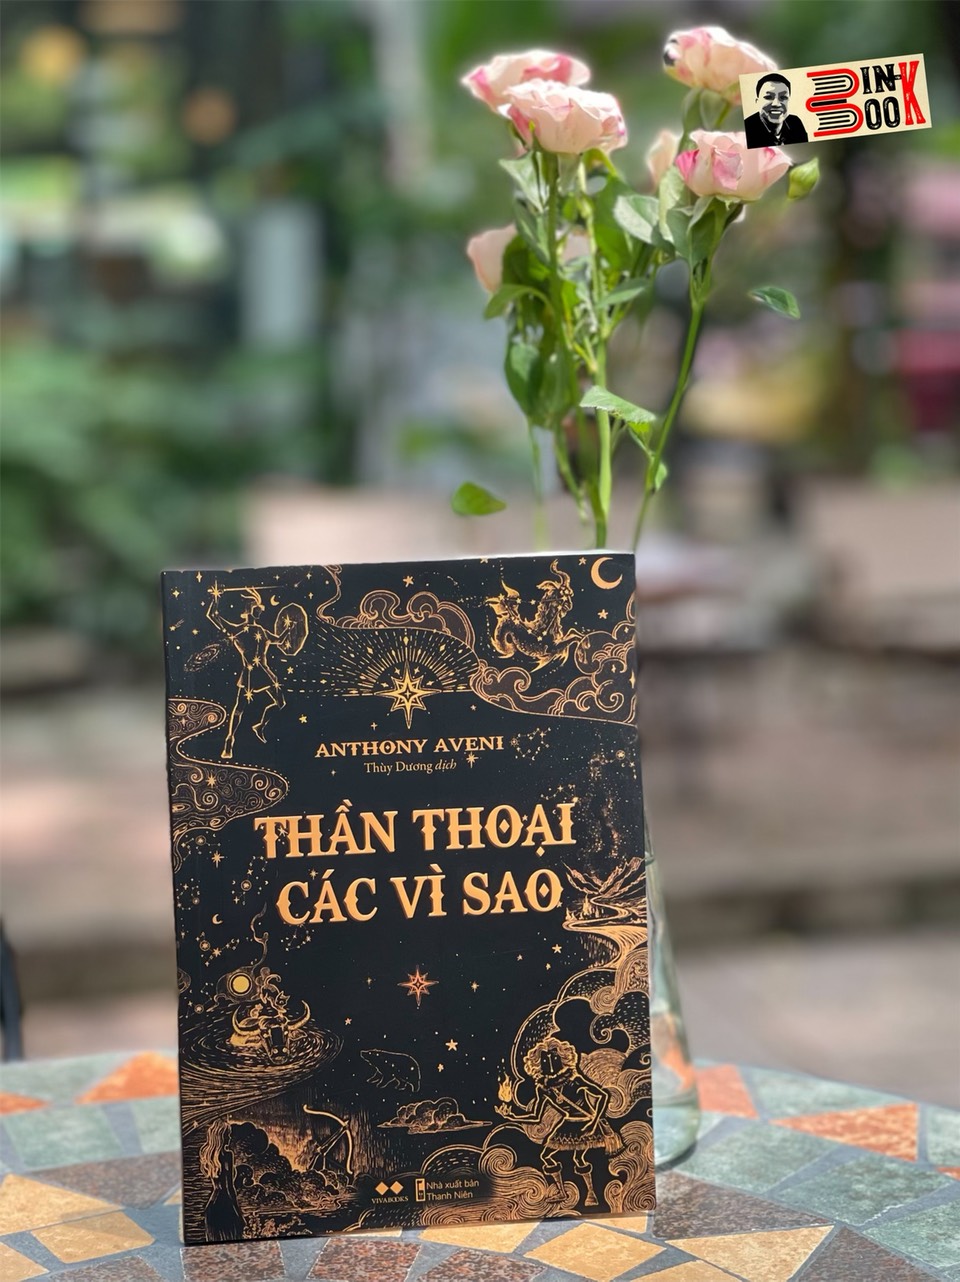 THẦN THOẠI CÁC VÌ SAO – Anthony Aveni - Thùy Dương dịch - VivaBook - AZ Việt Nam